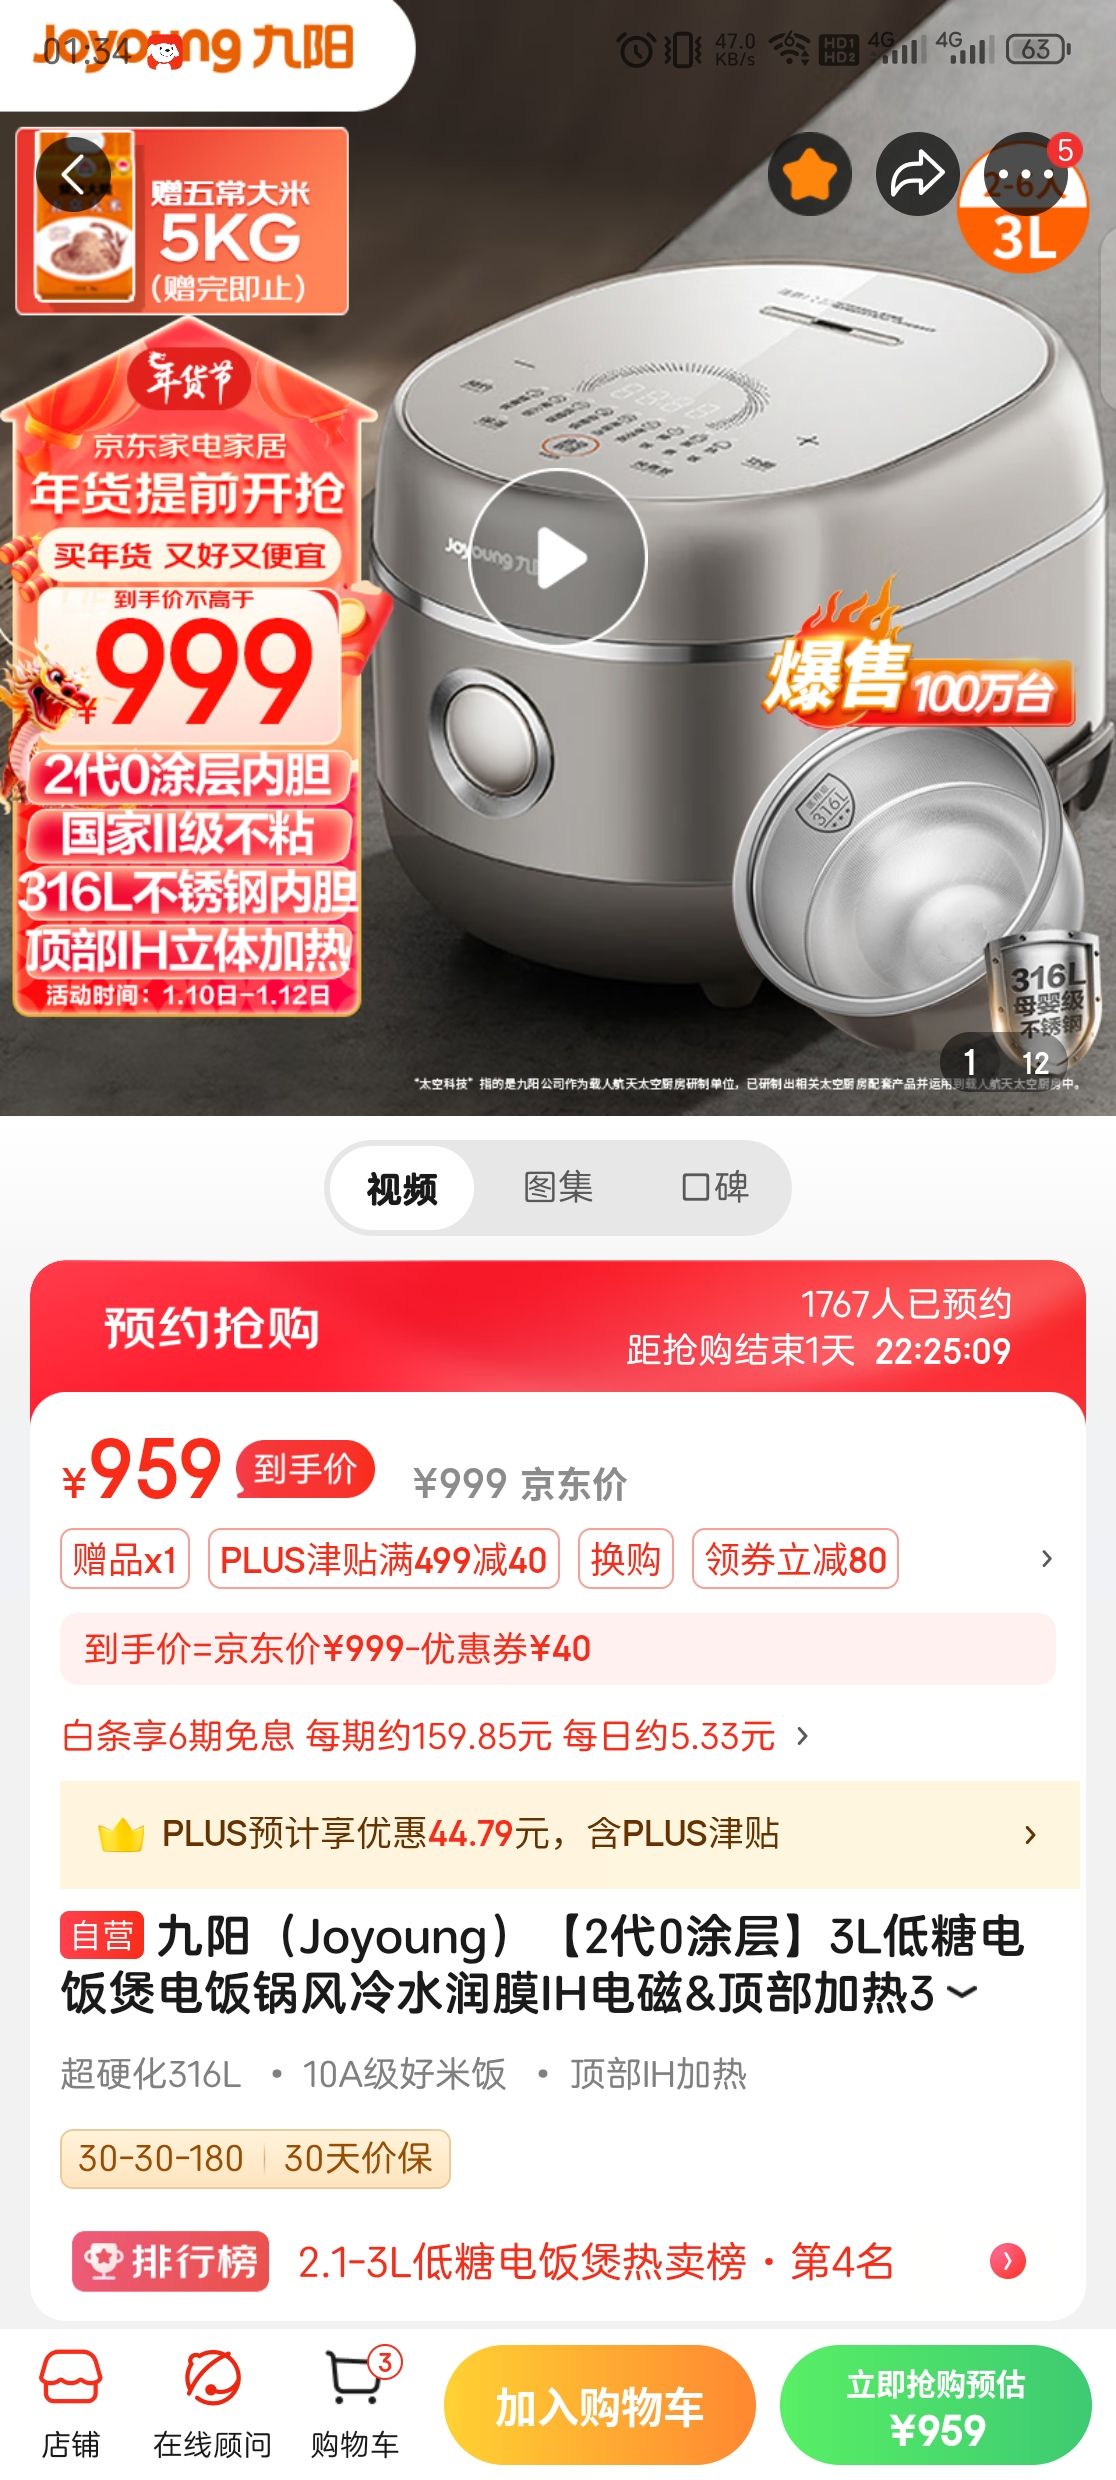 Joyoung 九阳 2代0涂层 30N6S 电饭煲 3L 999元